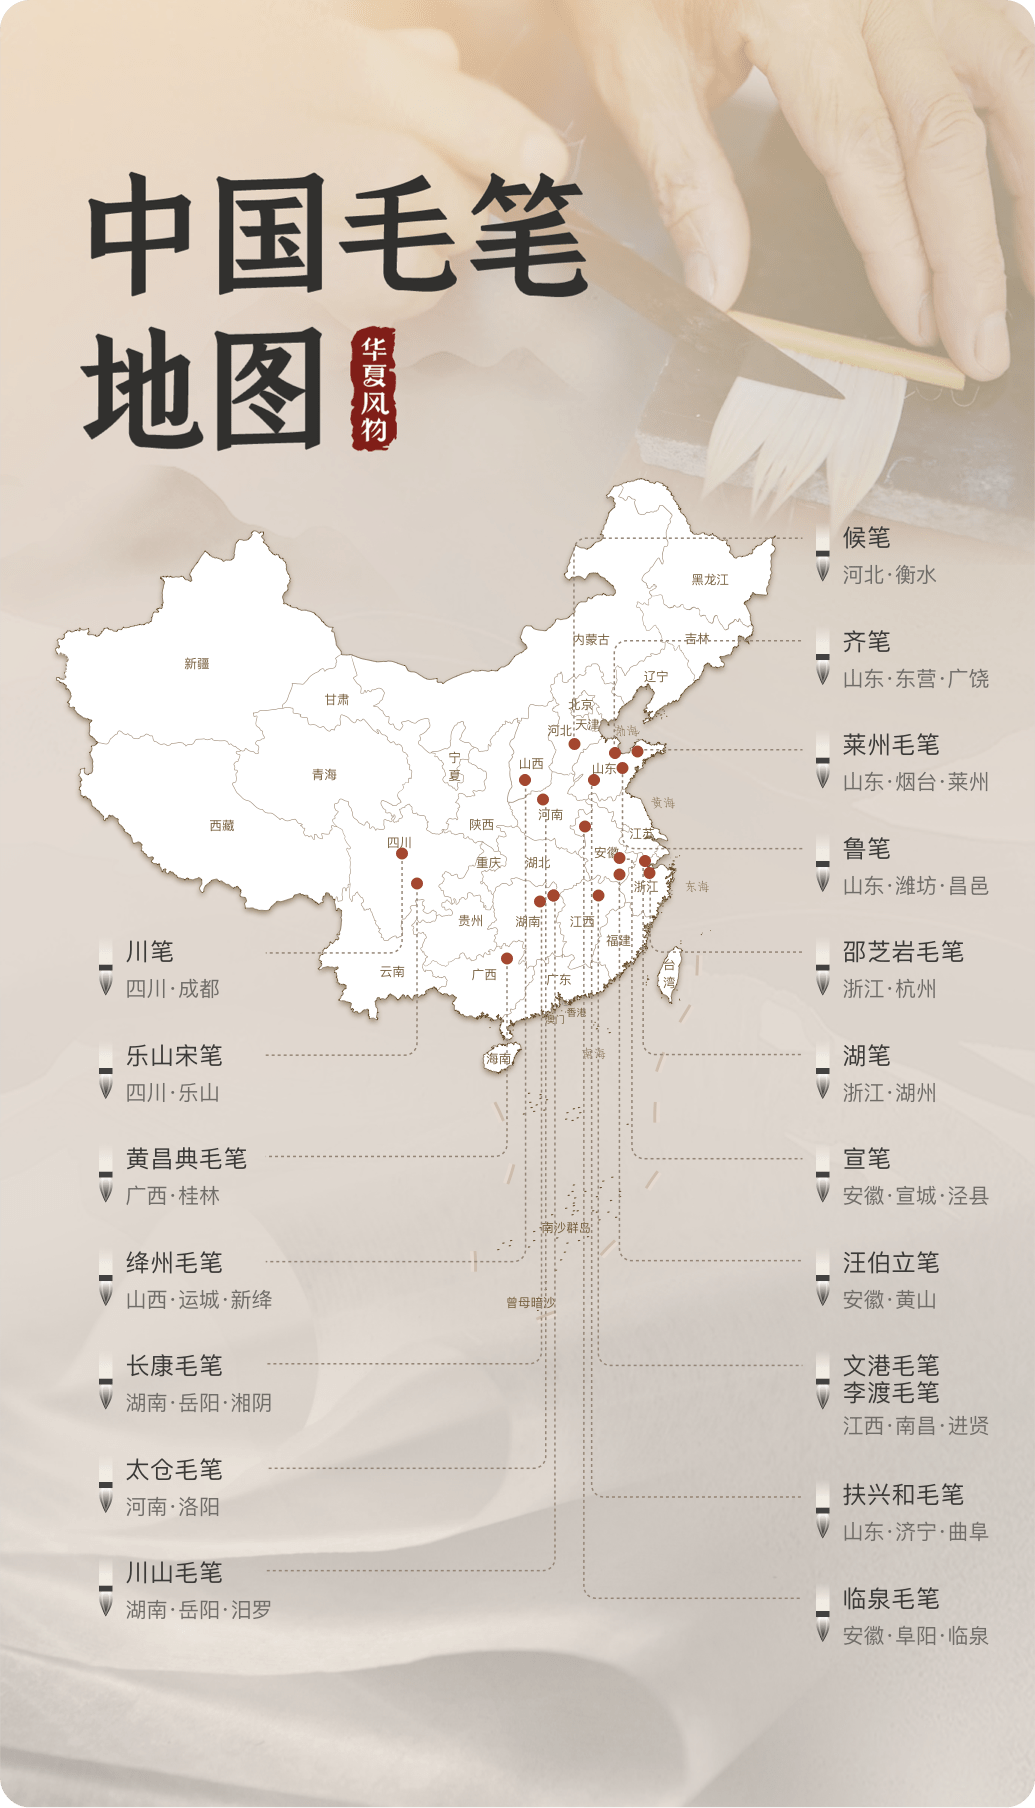 中国毛笔地图 ©华夏风物